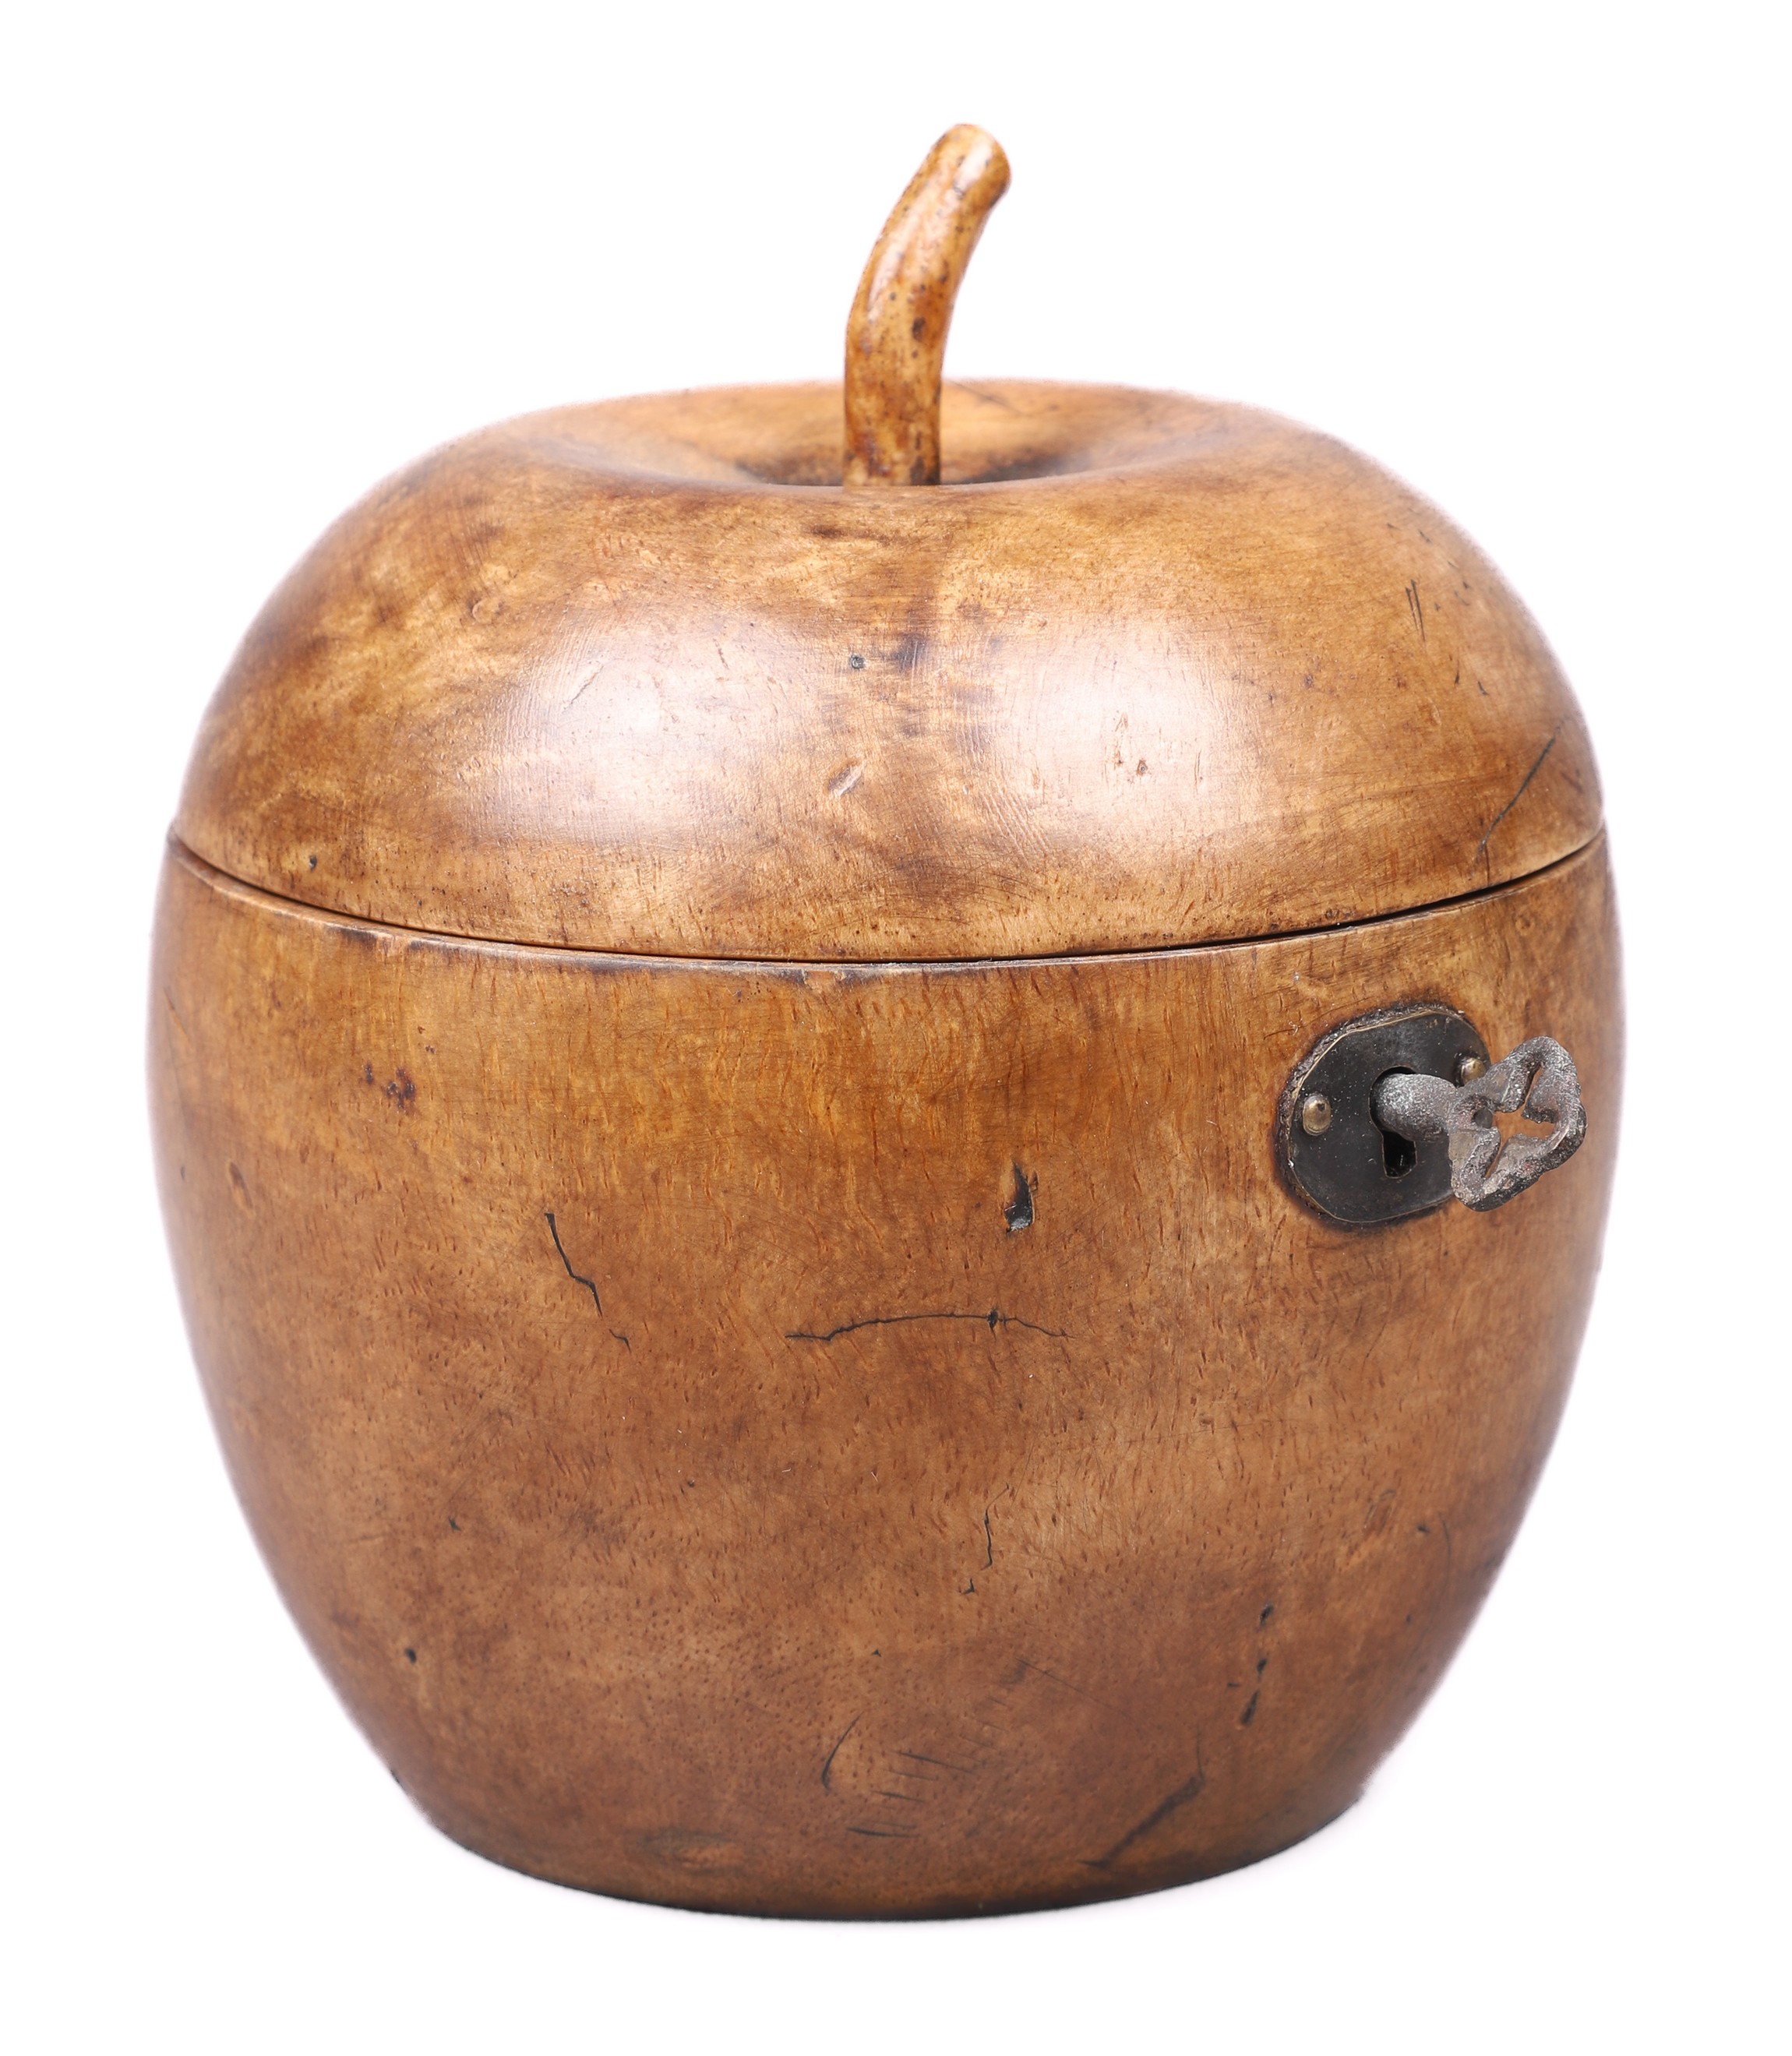 English fruitwood apple form tea 27a48e